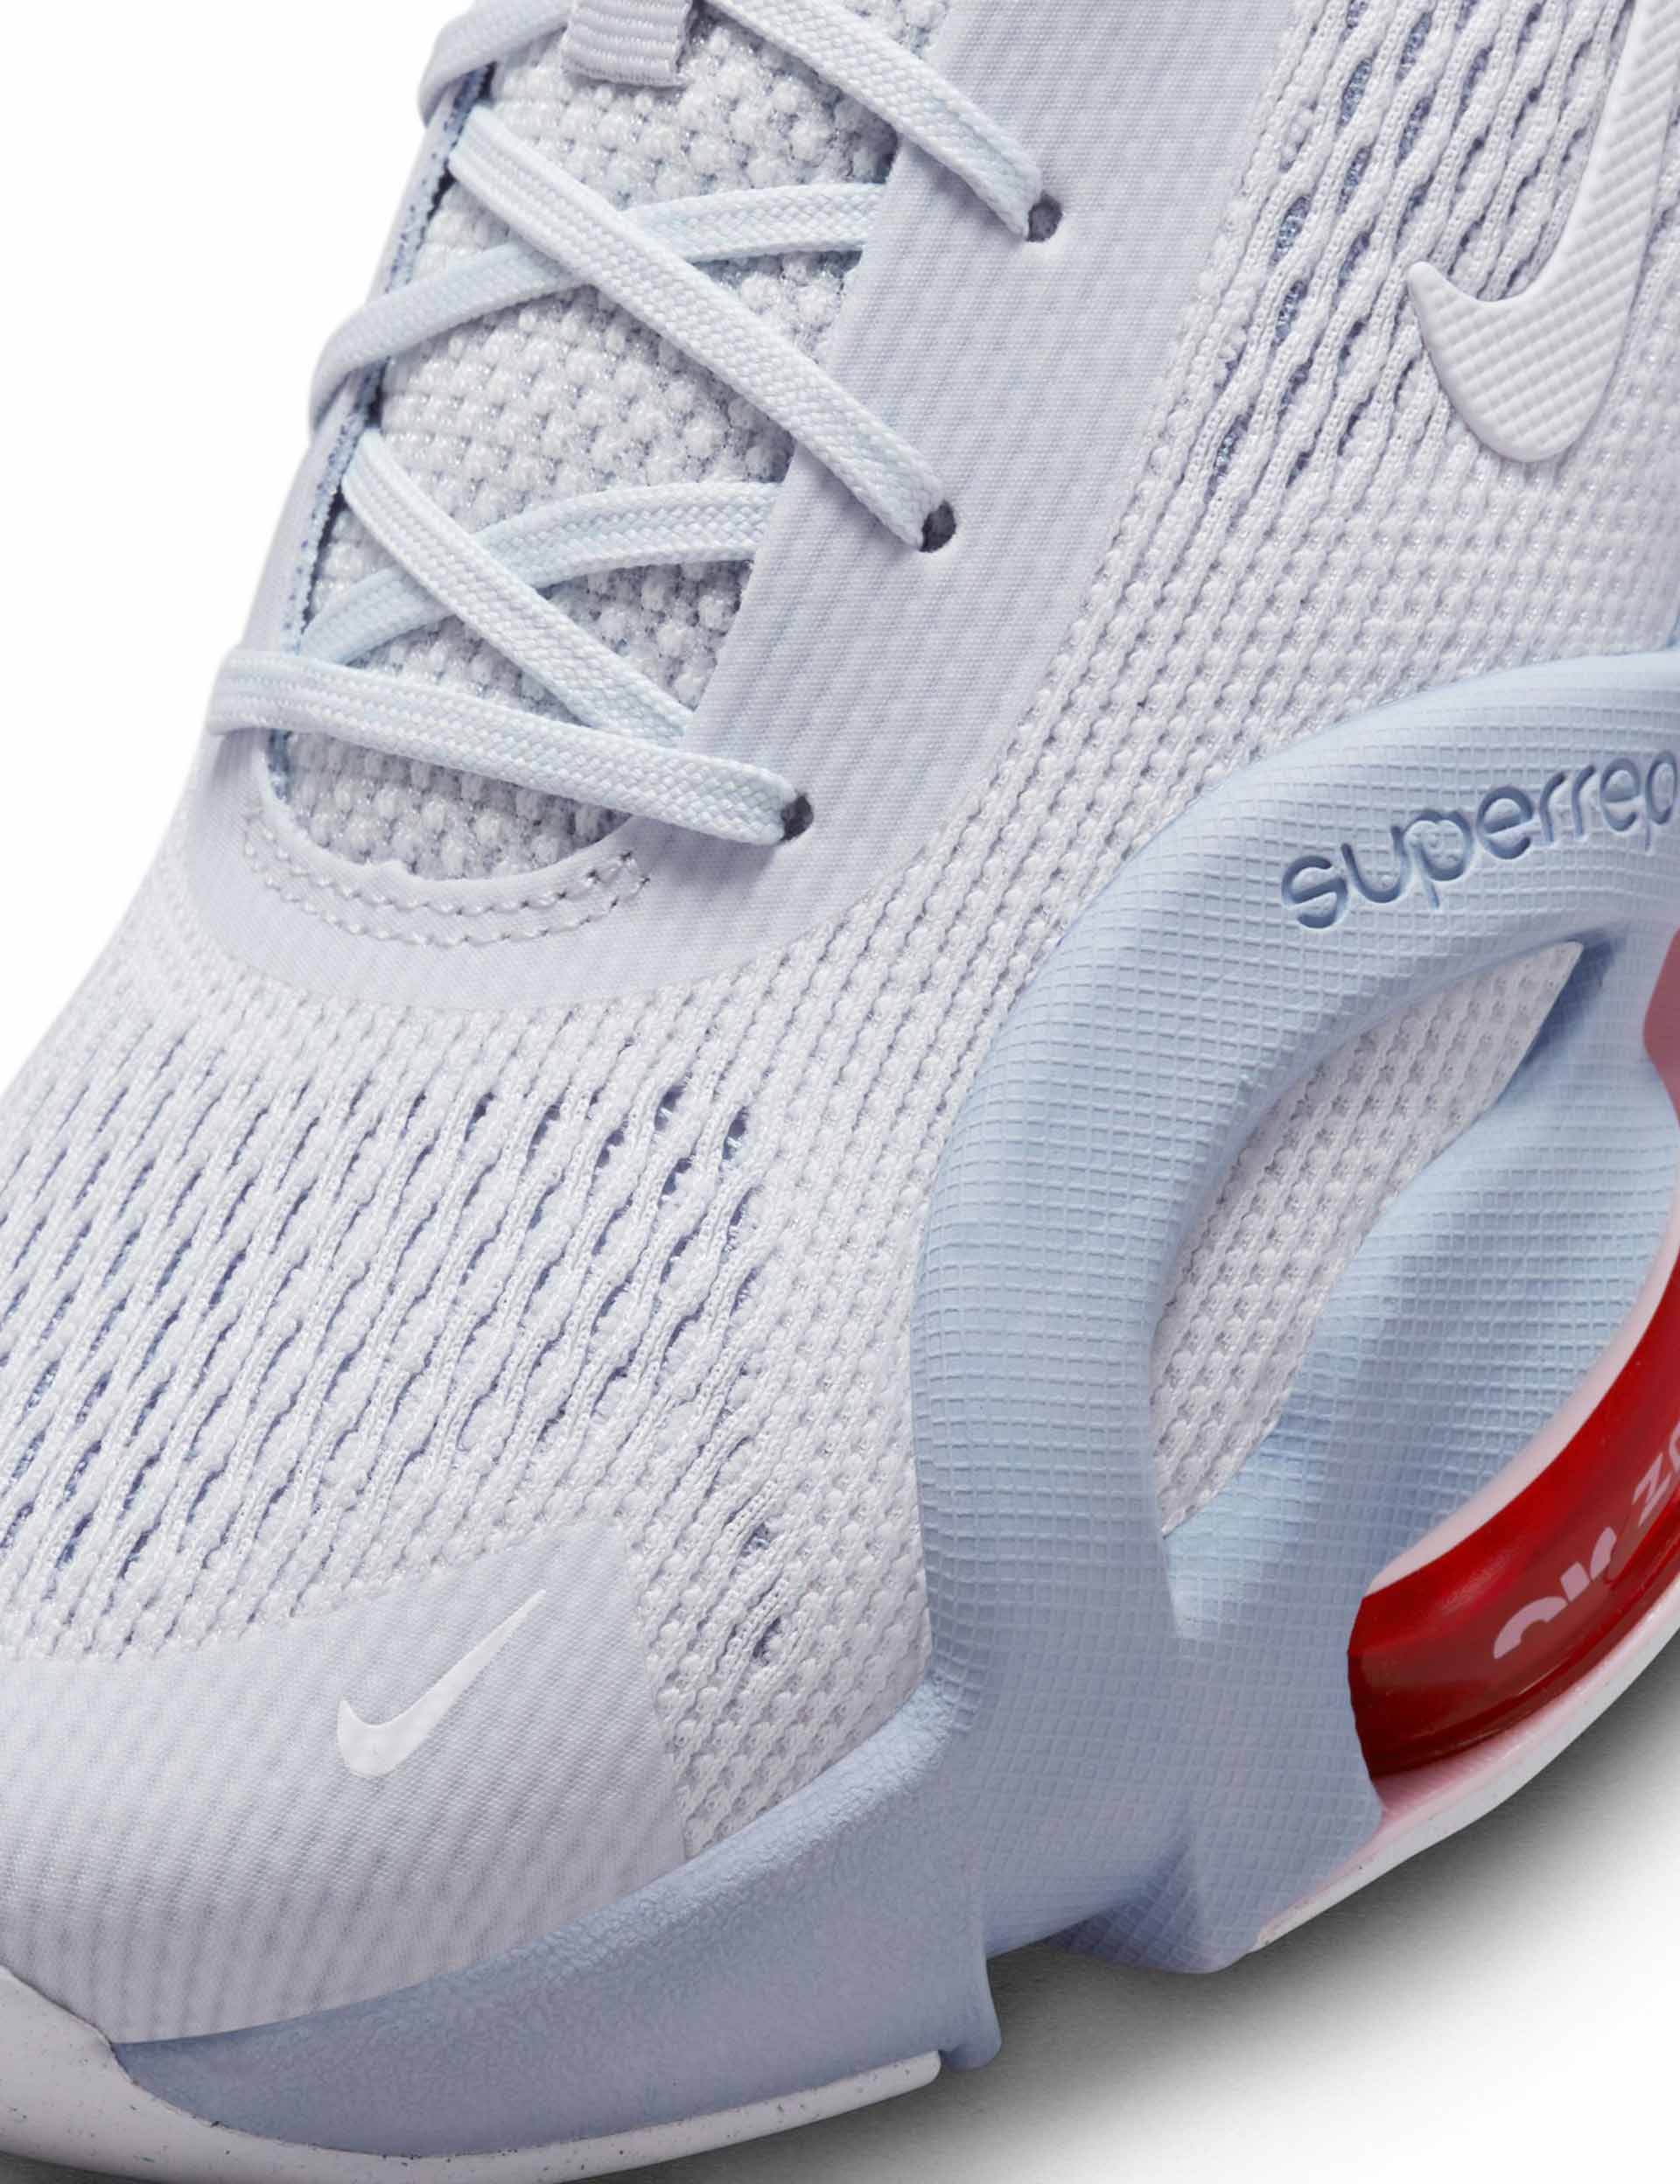 Defecte Onzeker krekel Nike | Zoom Superrep 4 Next Nature Shoes - Grey/Blue | The Sports Edit